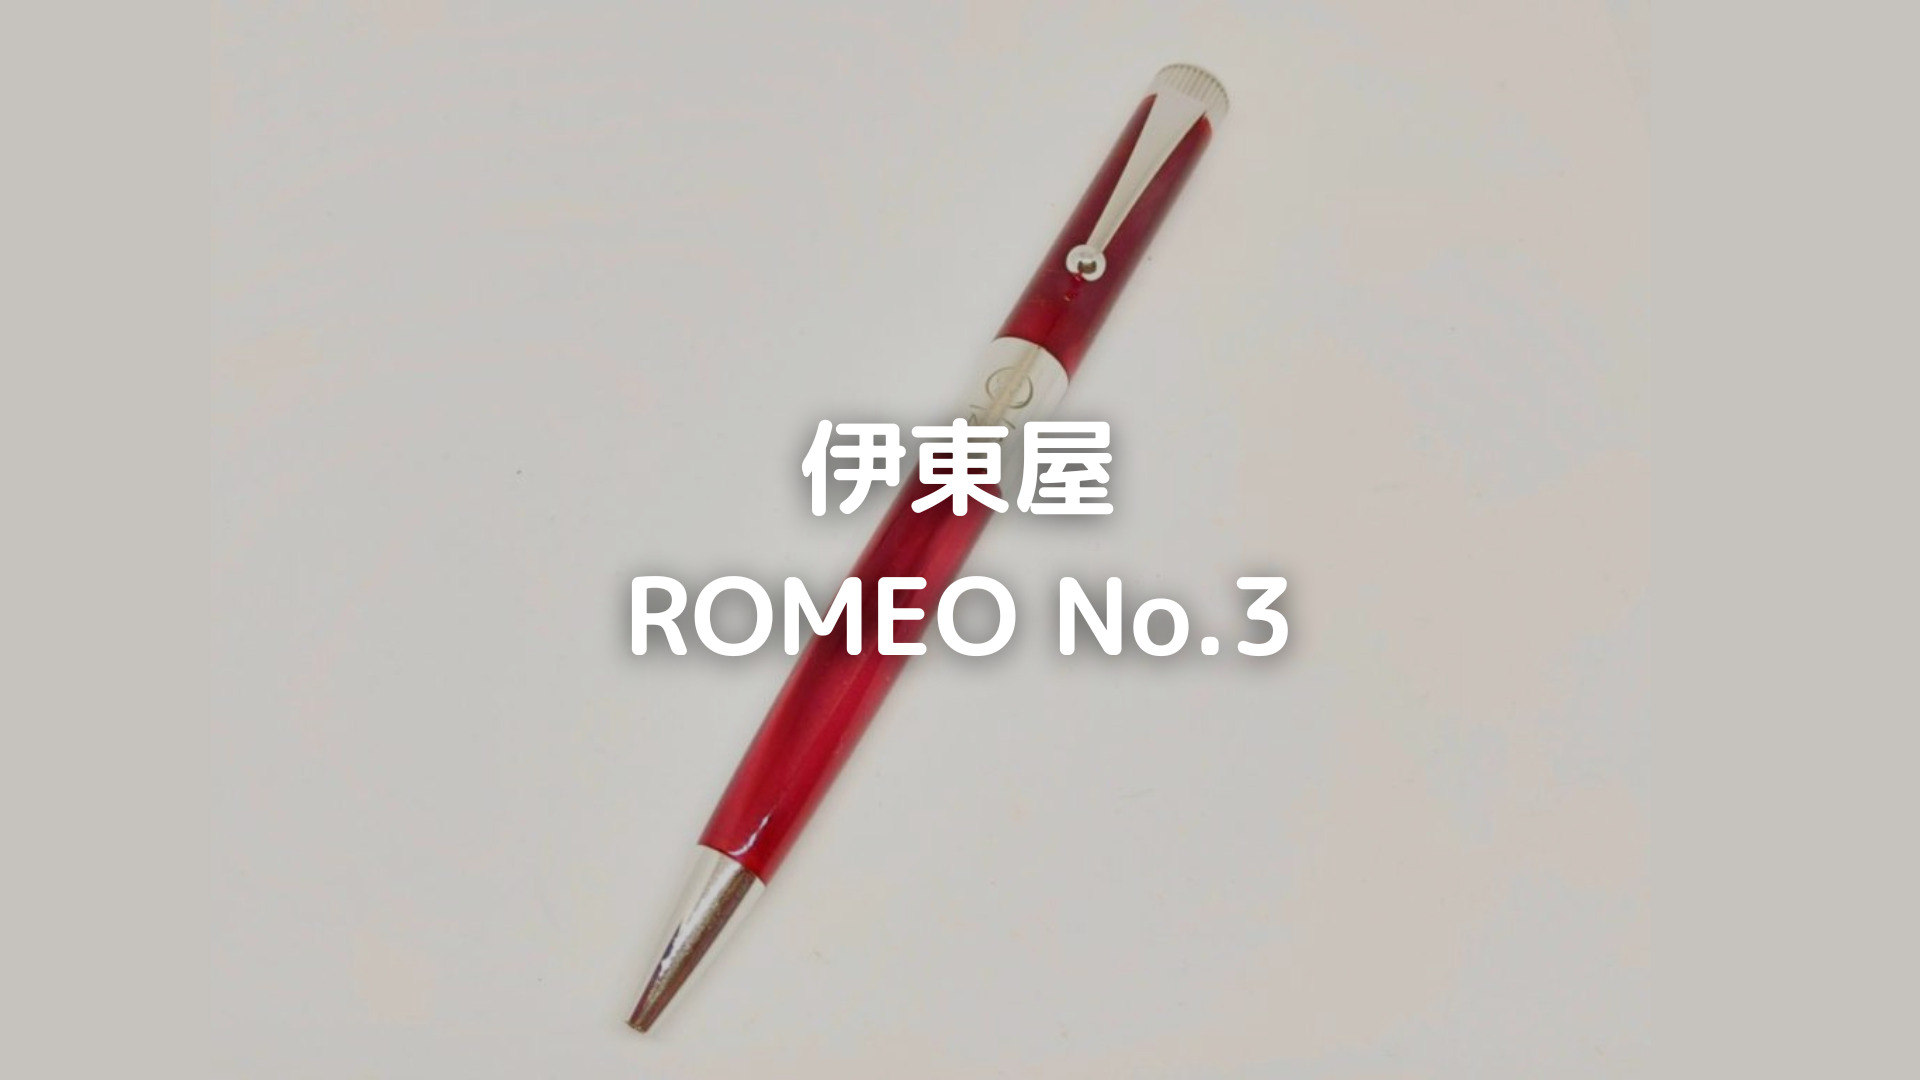 伊東屋『ROMEO No.3』レビュー。長時間書いても疲れにくい、美しいデザインの高級ゲルインクボールペン！ レコペン！